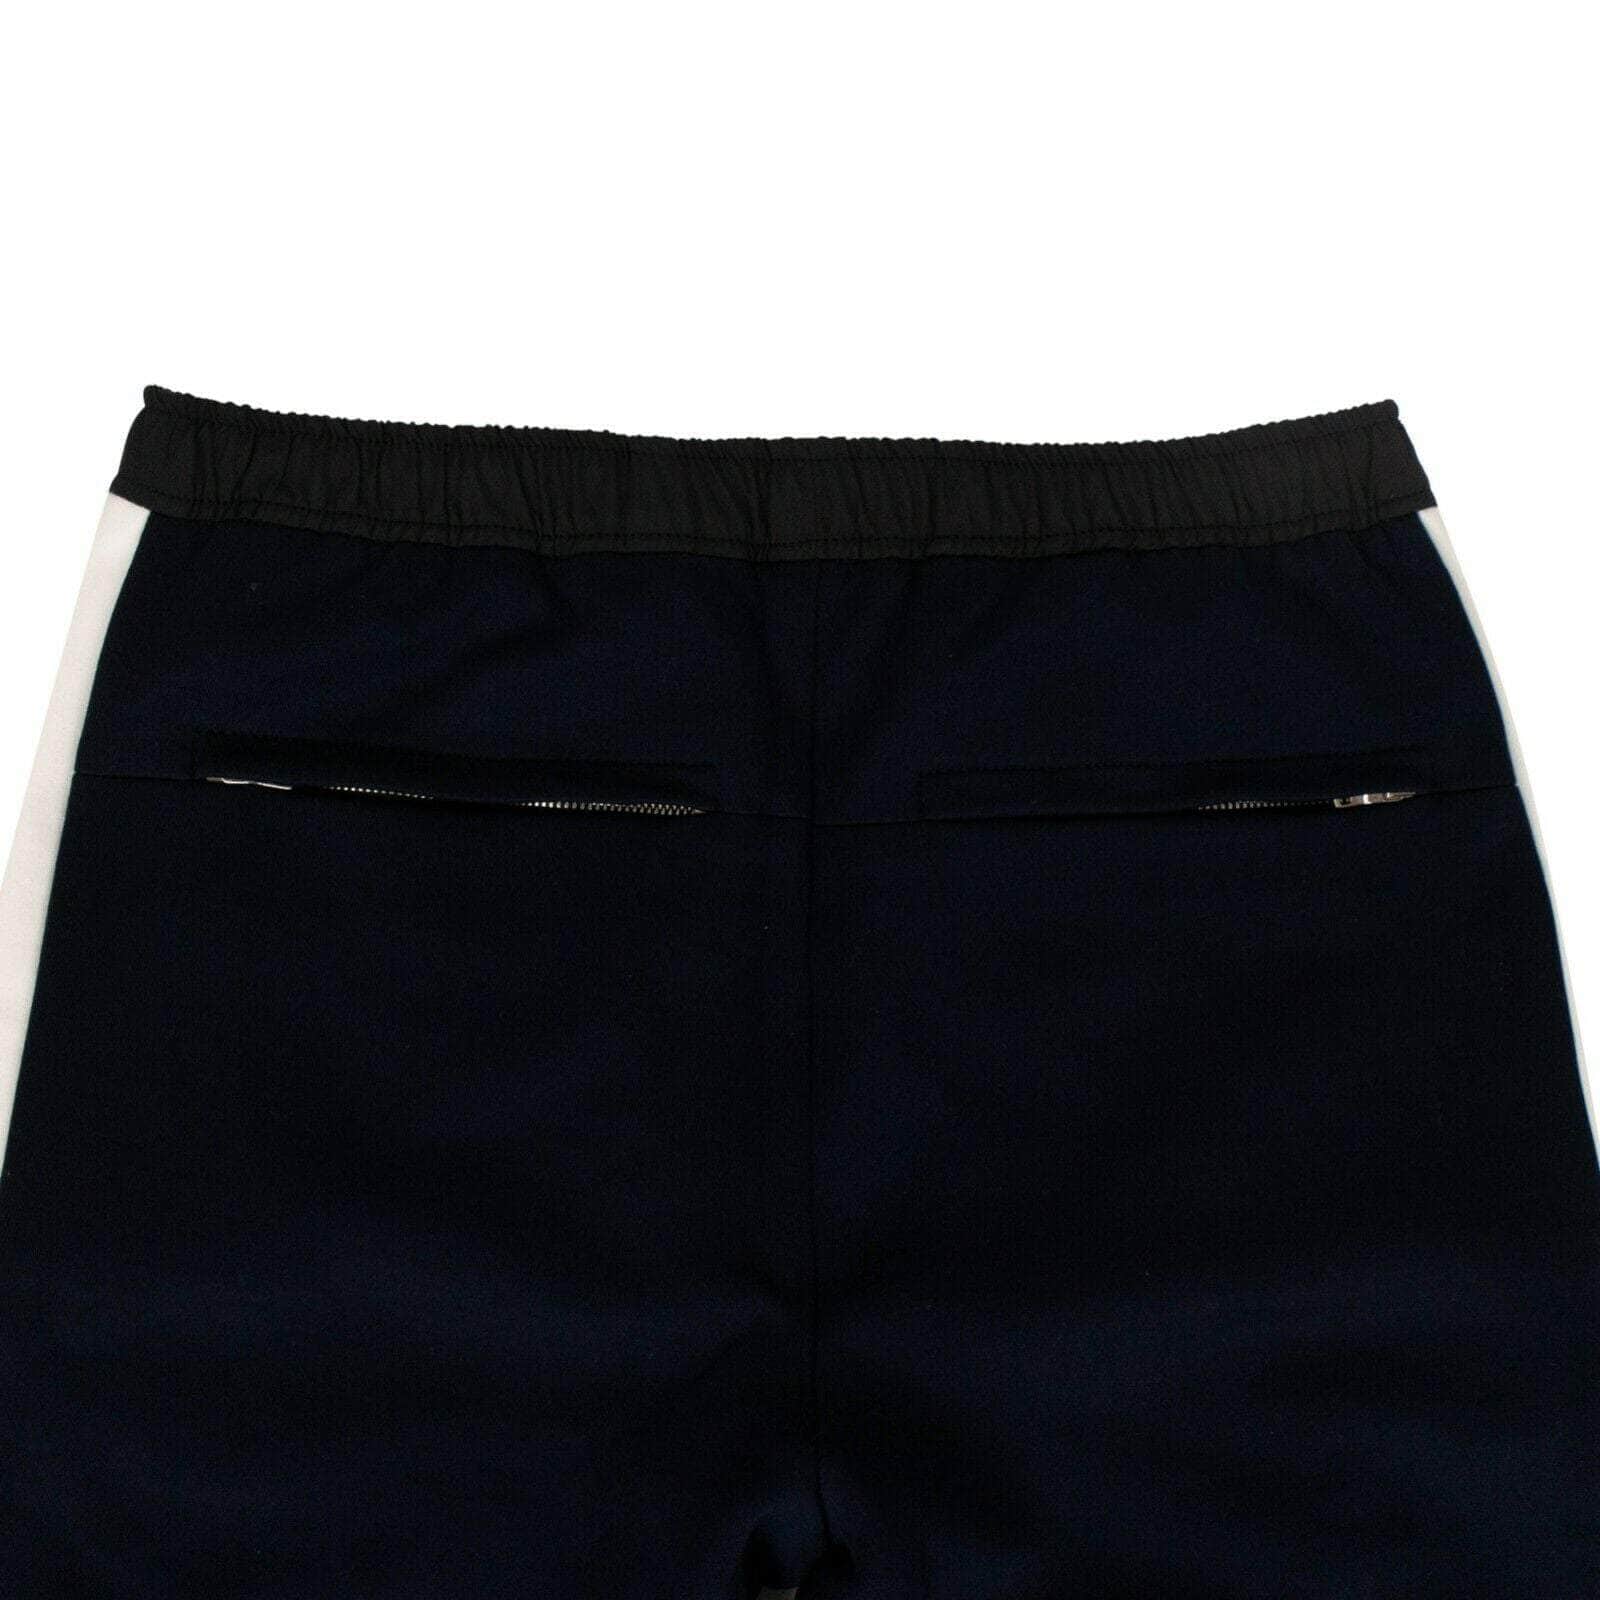 TIM COPPENS Men's Pants Cotton Pieced Jogger Pants - Navy Blue